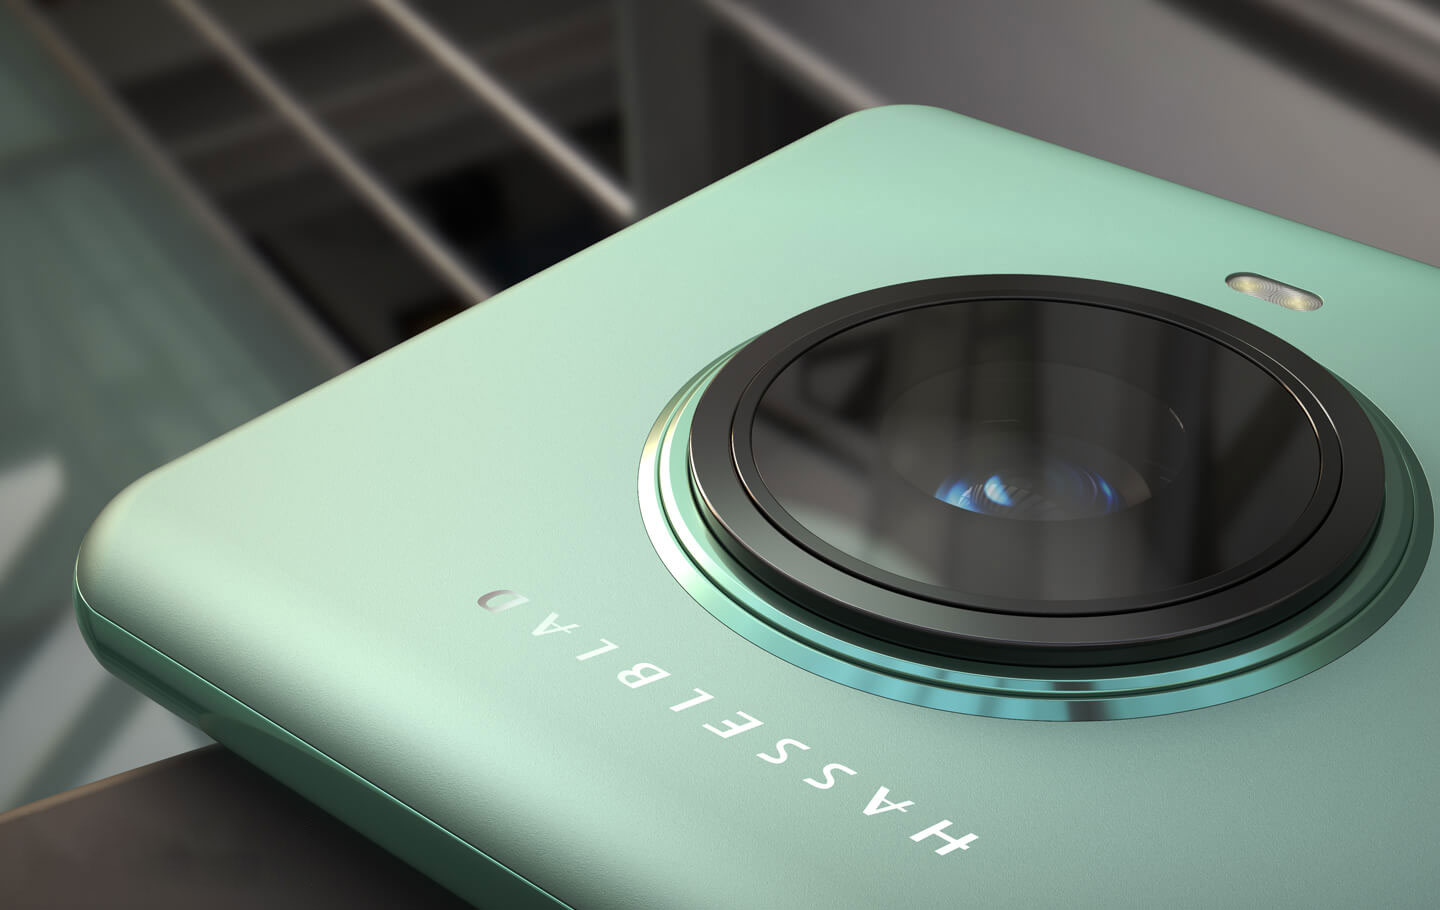 دوربین دوار وان پلاس در جانشین OnePlus 10 Pro استفاده خواهد شد؟